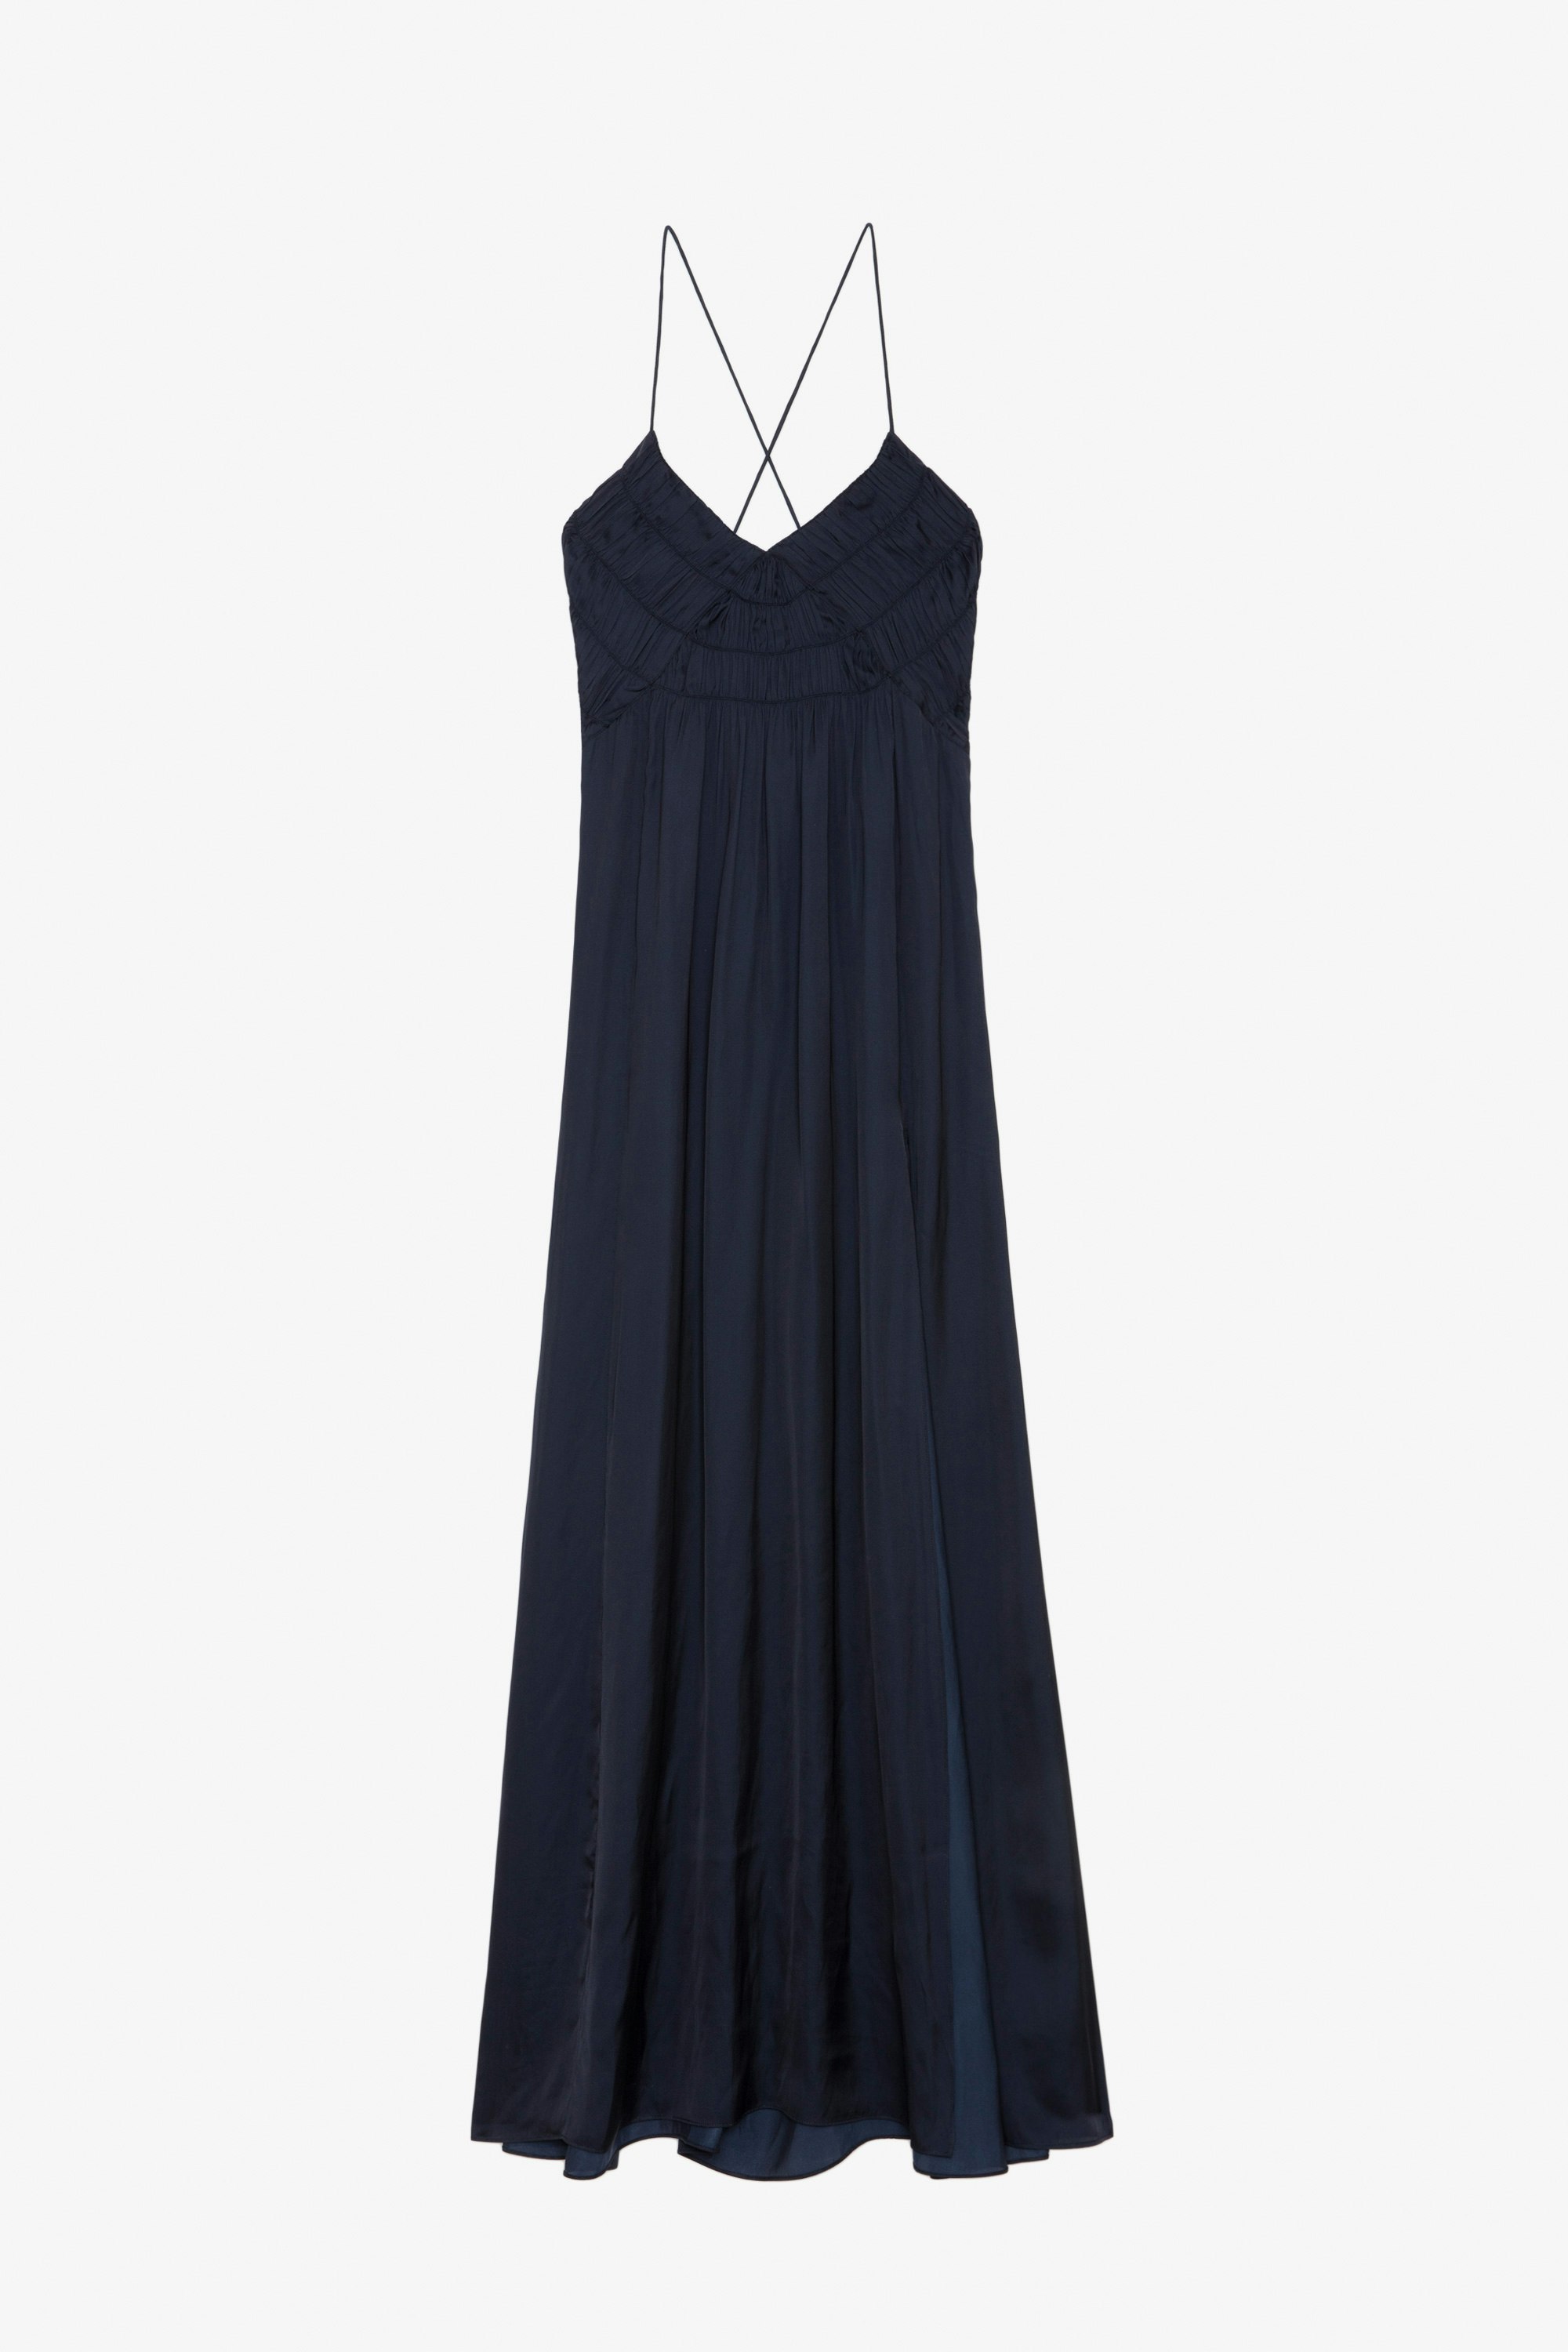 Kleid Rayonne Satin - Langes Satinkleid im Lingerie-Stil in Marineblau mit Trägern, geschlitztem Rockteil und ausgearbeiteter Vorderseite.